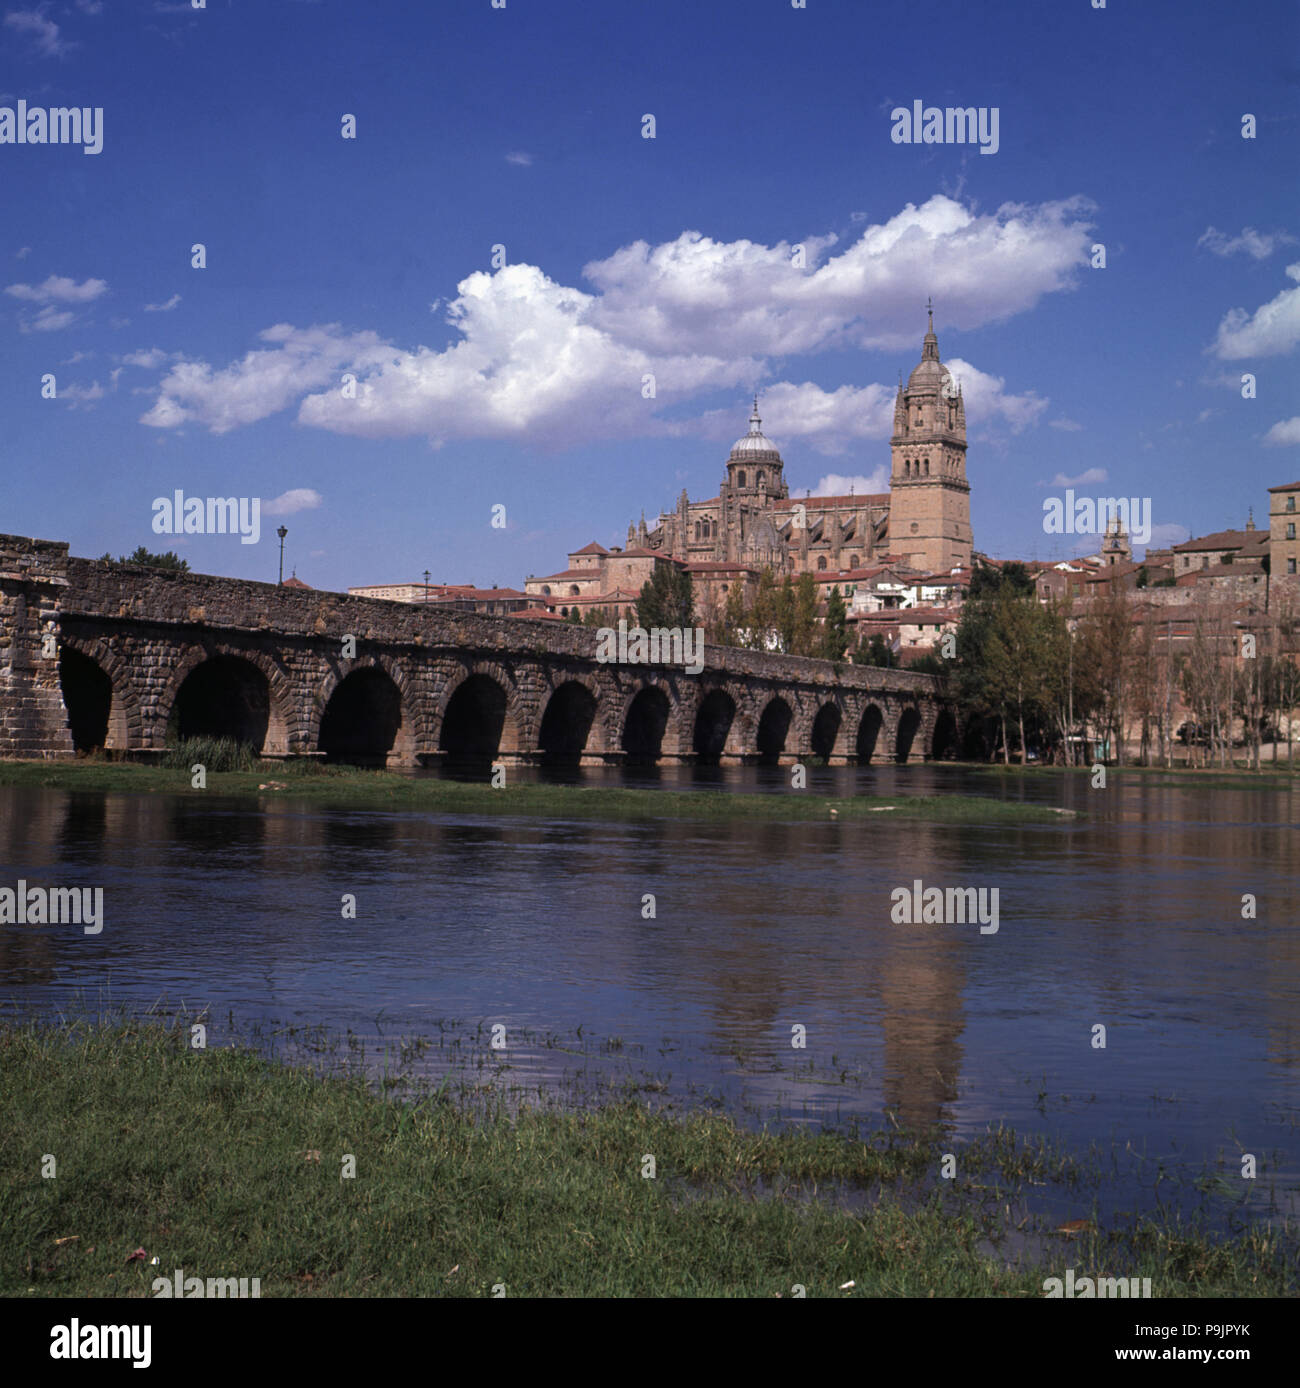 Salamanca. Vista del ponte romano sul fiume Tormes con la cattedrale in background. Foto Stock